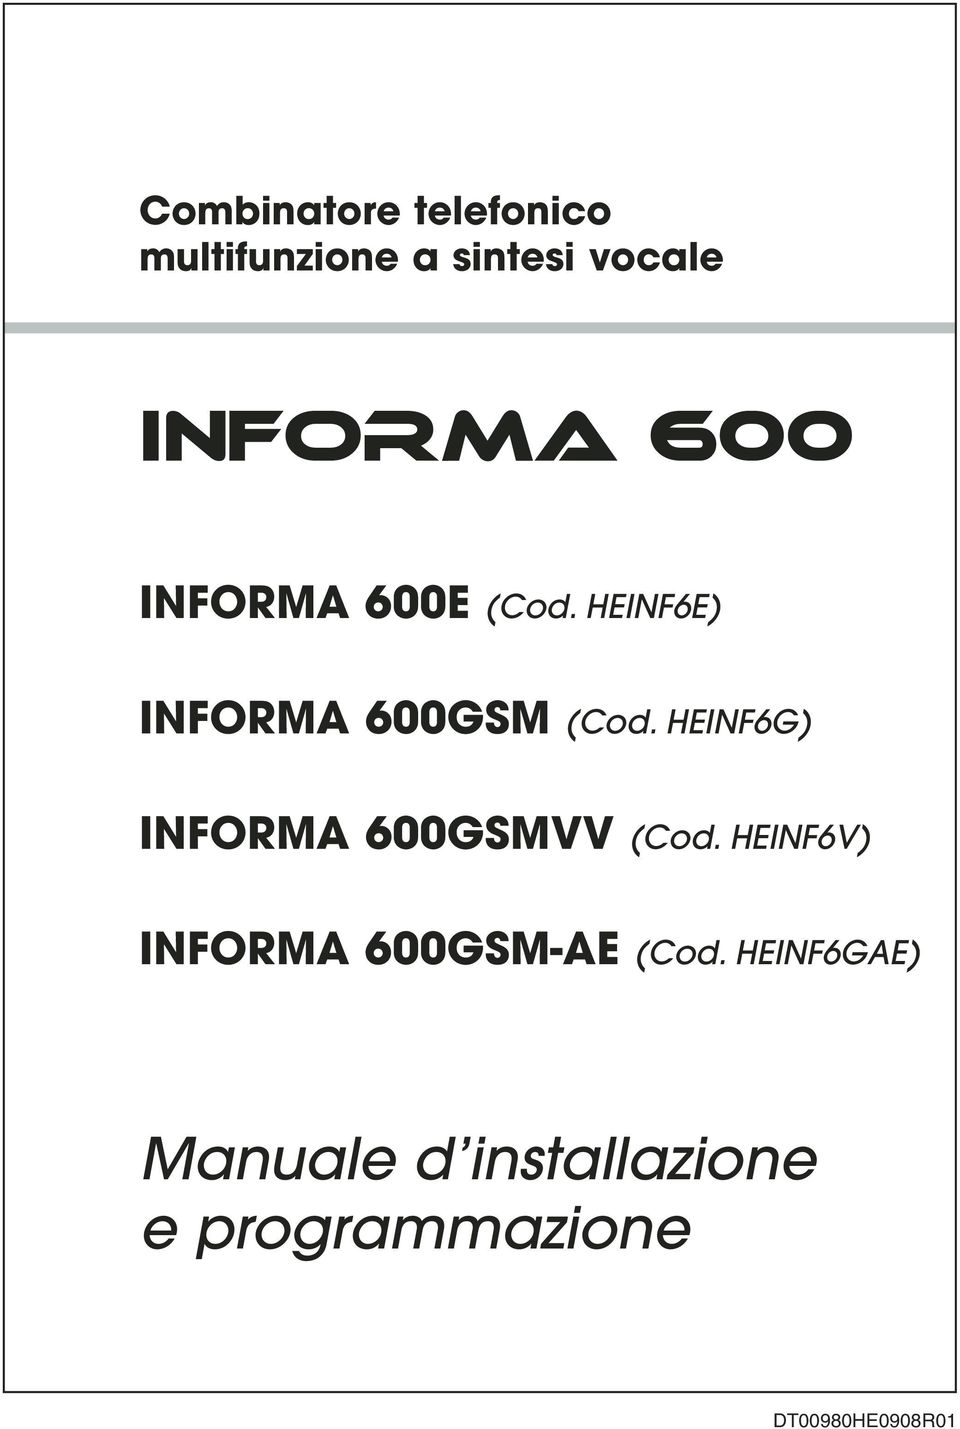 HEINF6G) INFORMA 600GSMVV (Cod.